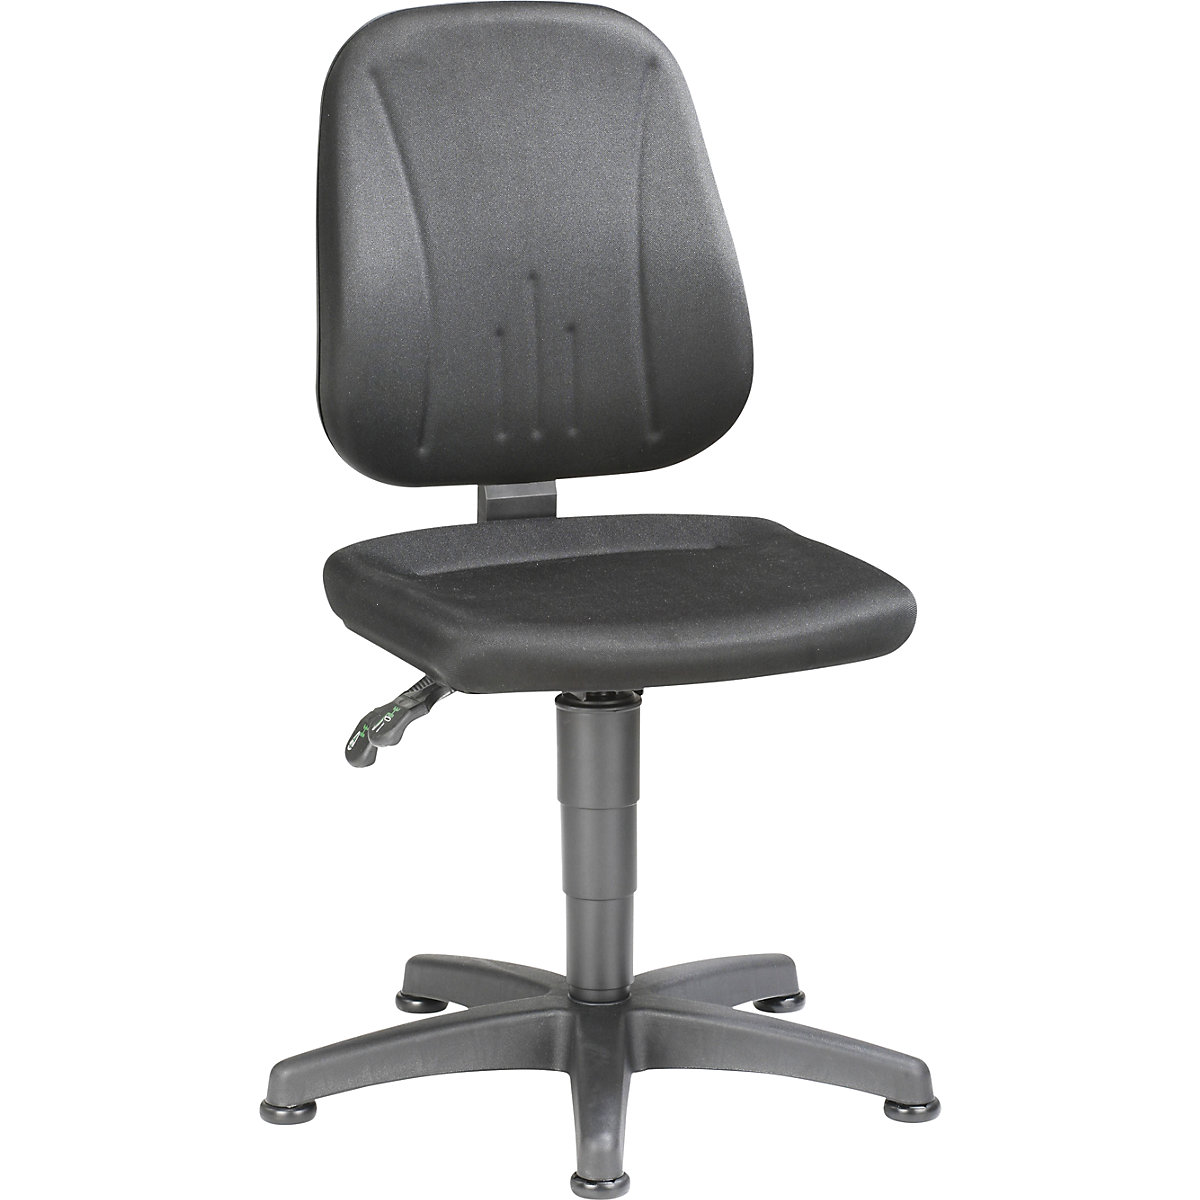 Okretni radni stolac – bimos, s namještanjem visine pomoću plinske opruge, presvlaka od tkanine, u crnoj boji, s podnim vodilicama-3